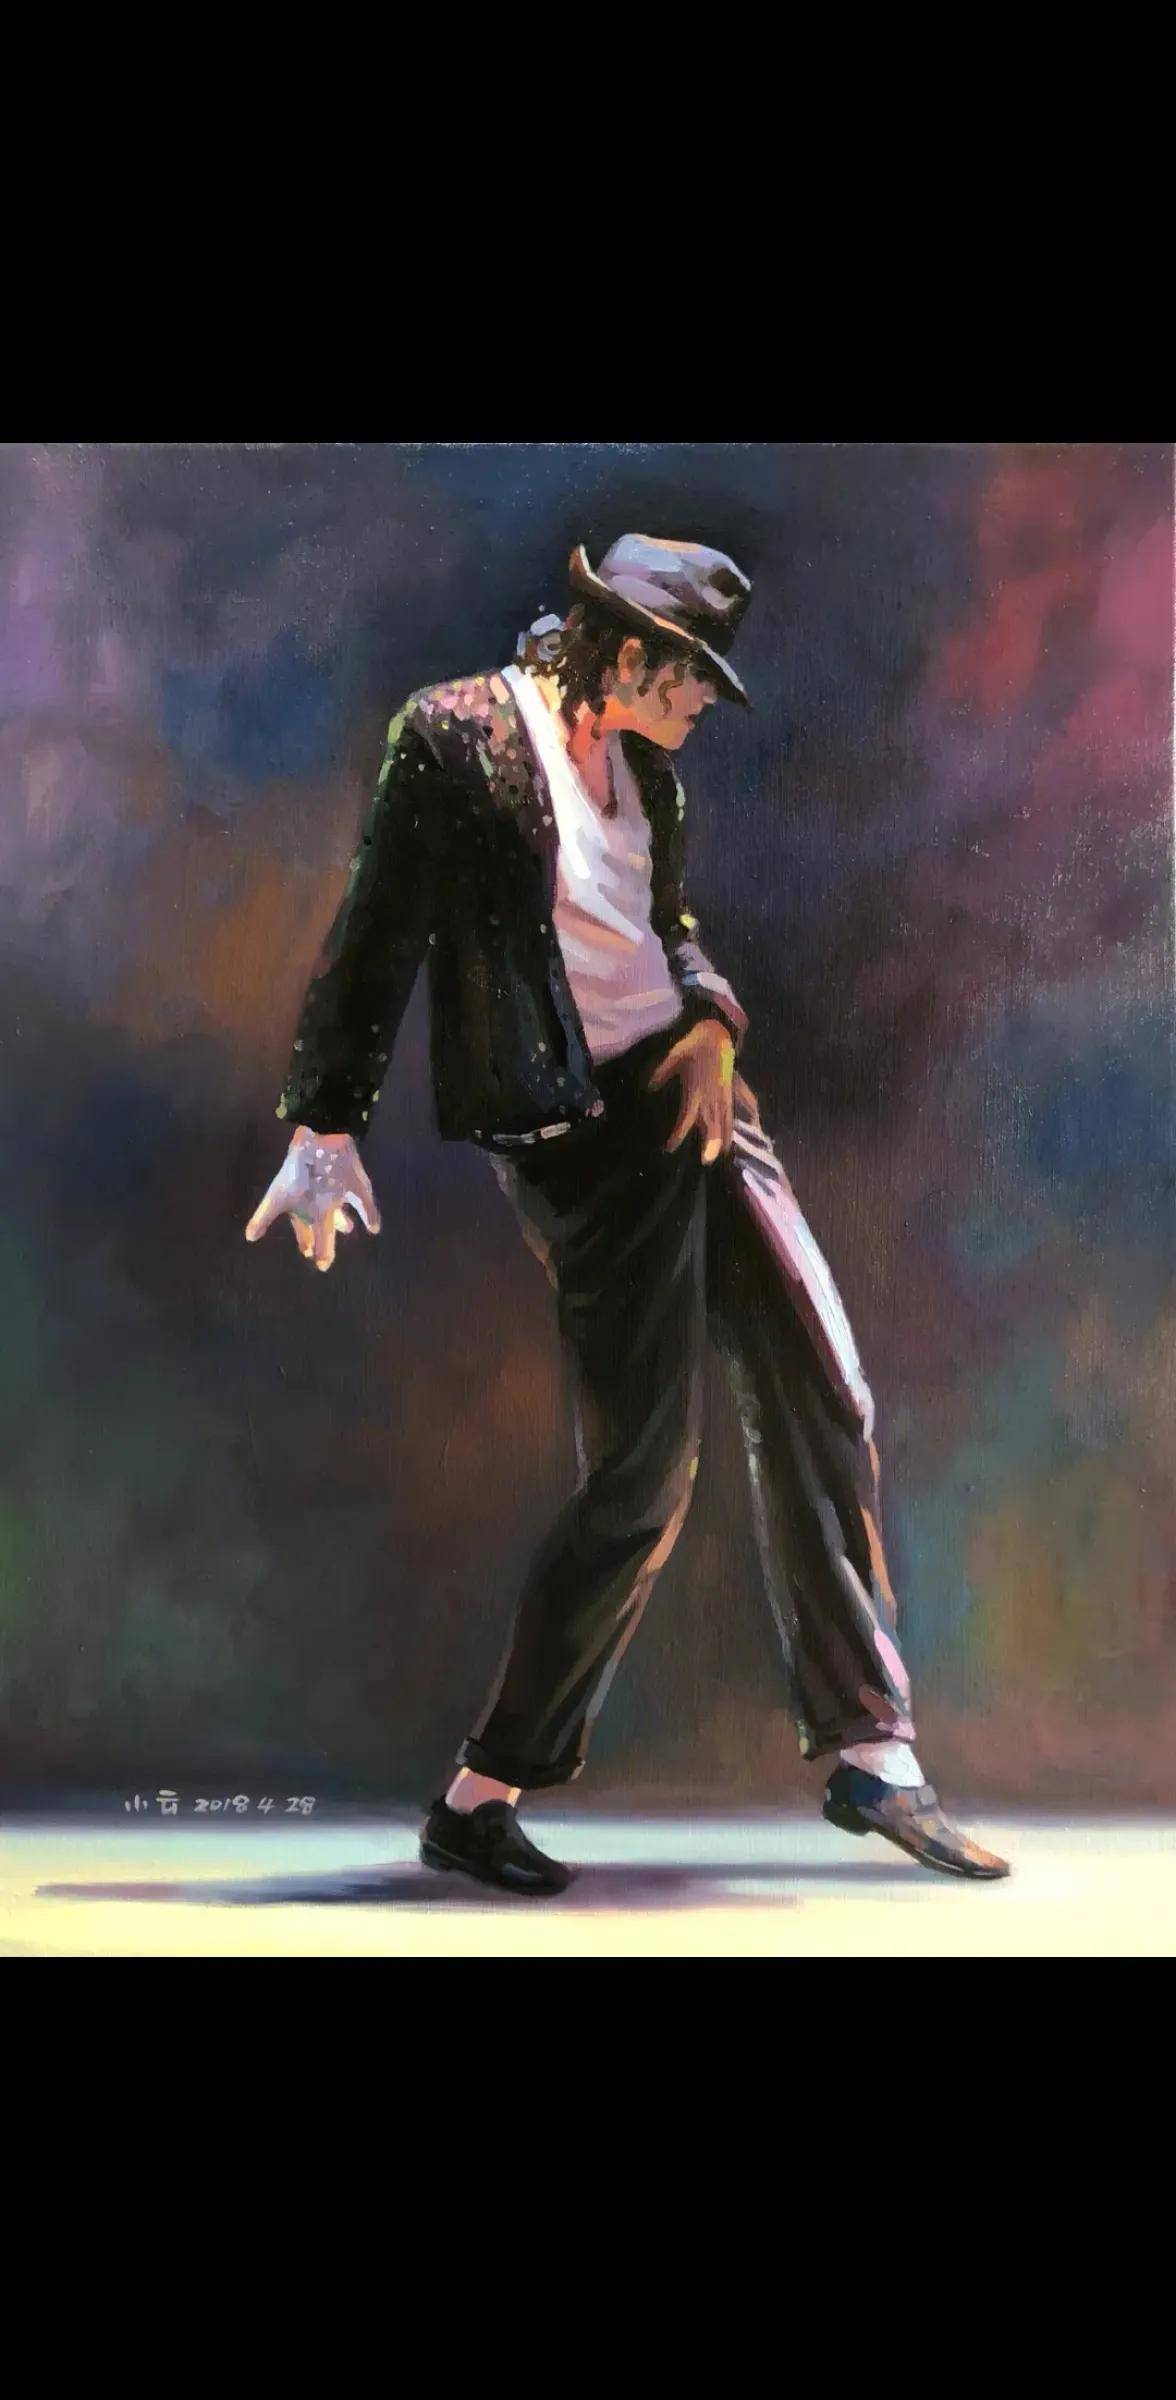 张艺兴演唱会意外惊喜,致敬迈克尔·杰克逊,跳舞跳得已经很棒